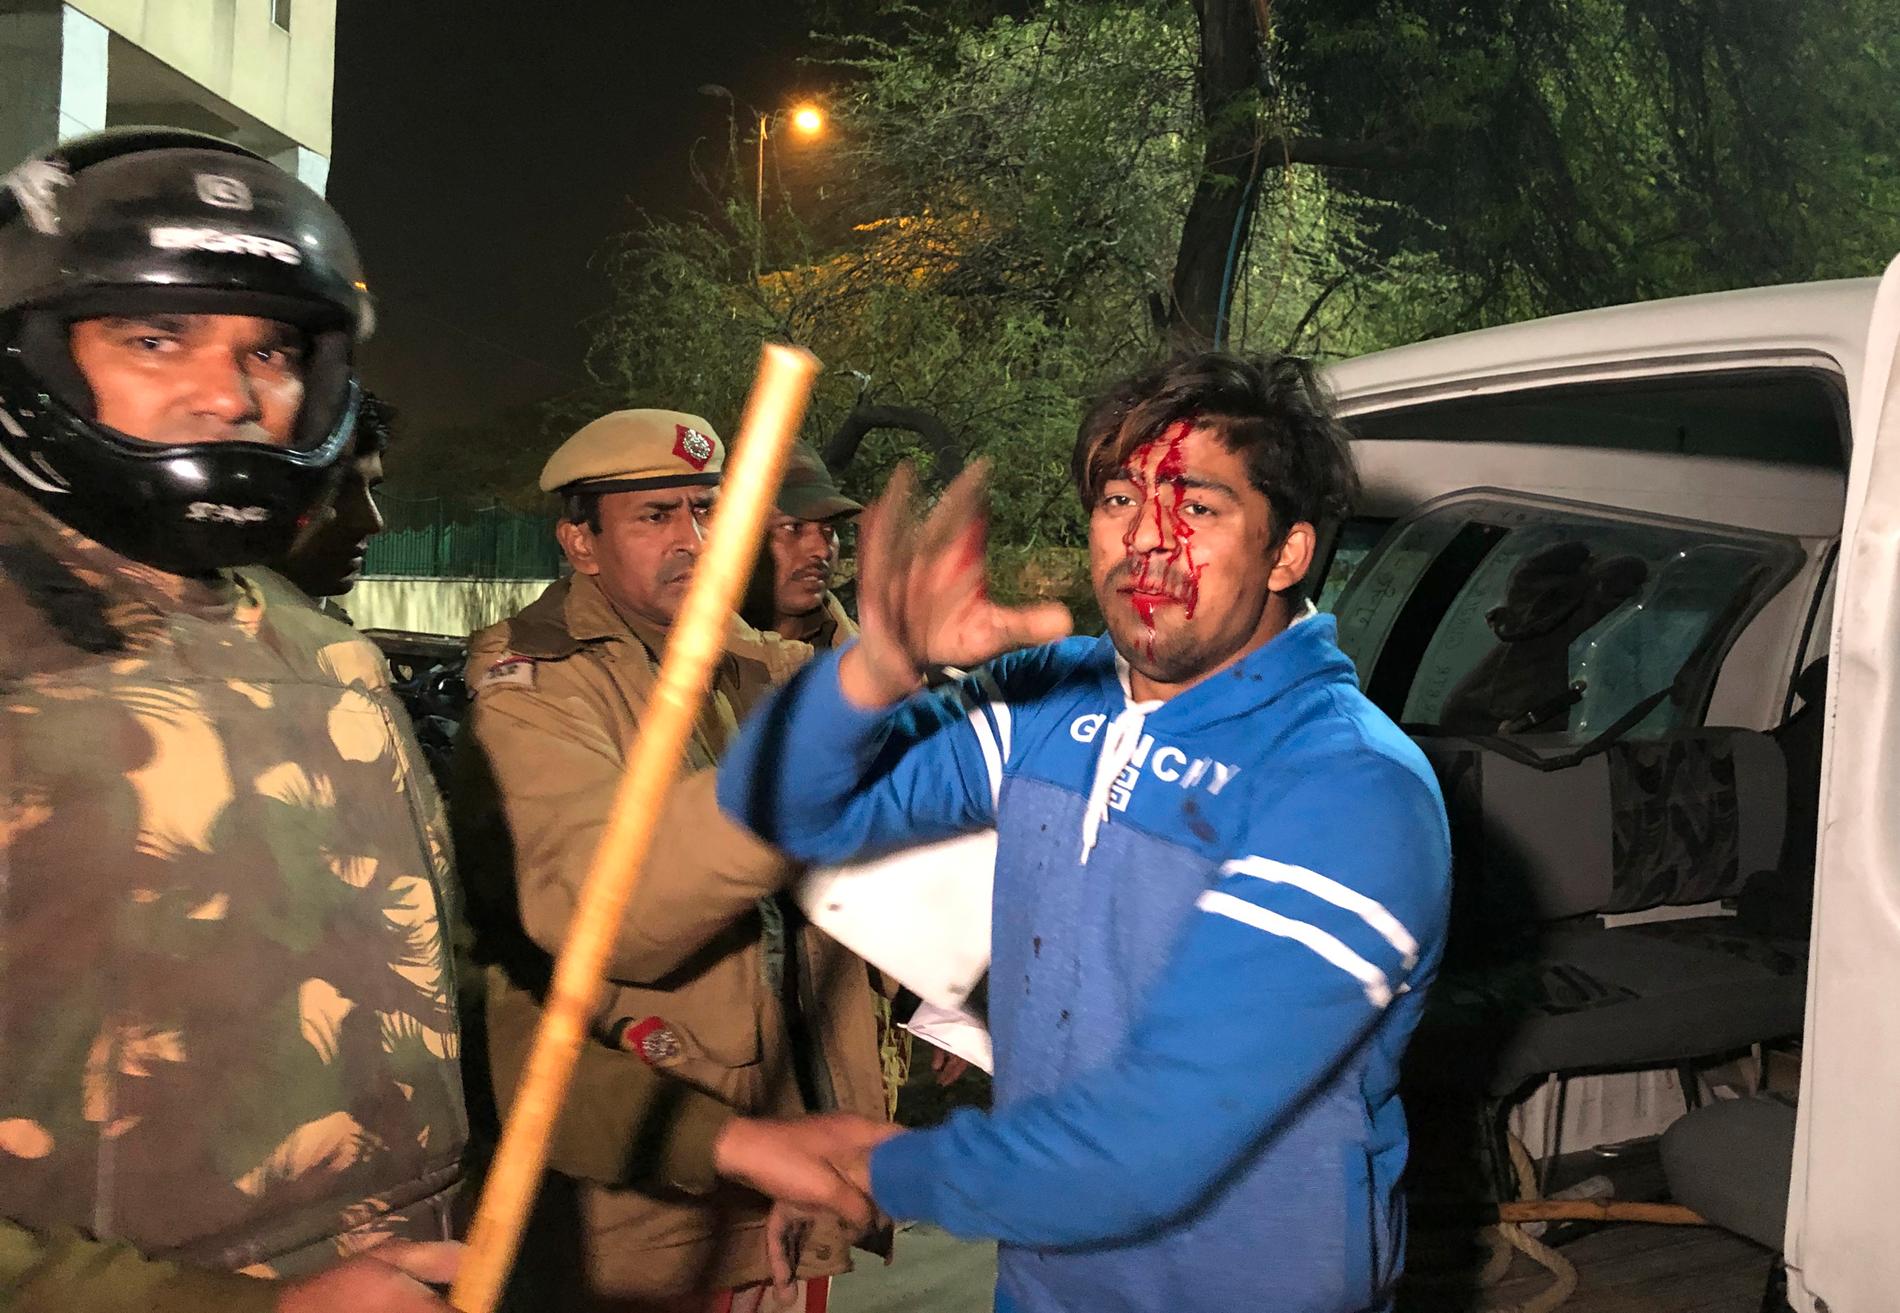 Polis griper en skadad student utanför universitetet Jamia Millia Islamia i Delhi, Indien. Bild tagen söndag 15 december.